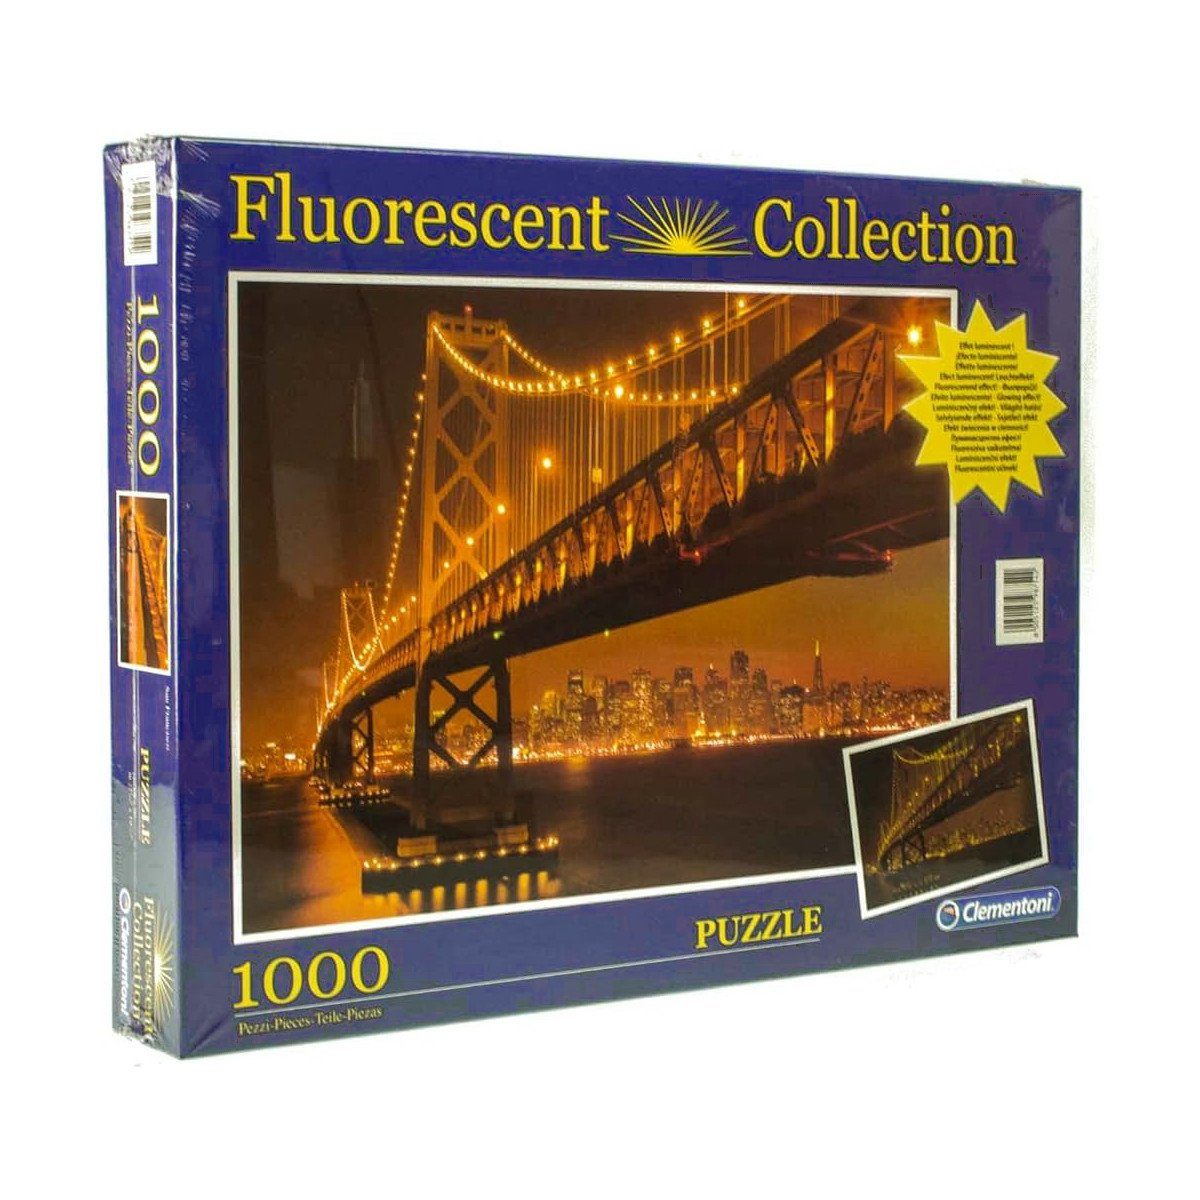 Puzzle Collection Quality Puzzleteile, San High Clementoni® Francisco, 1000 floureszierend